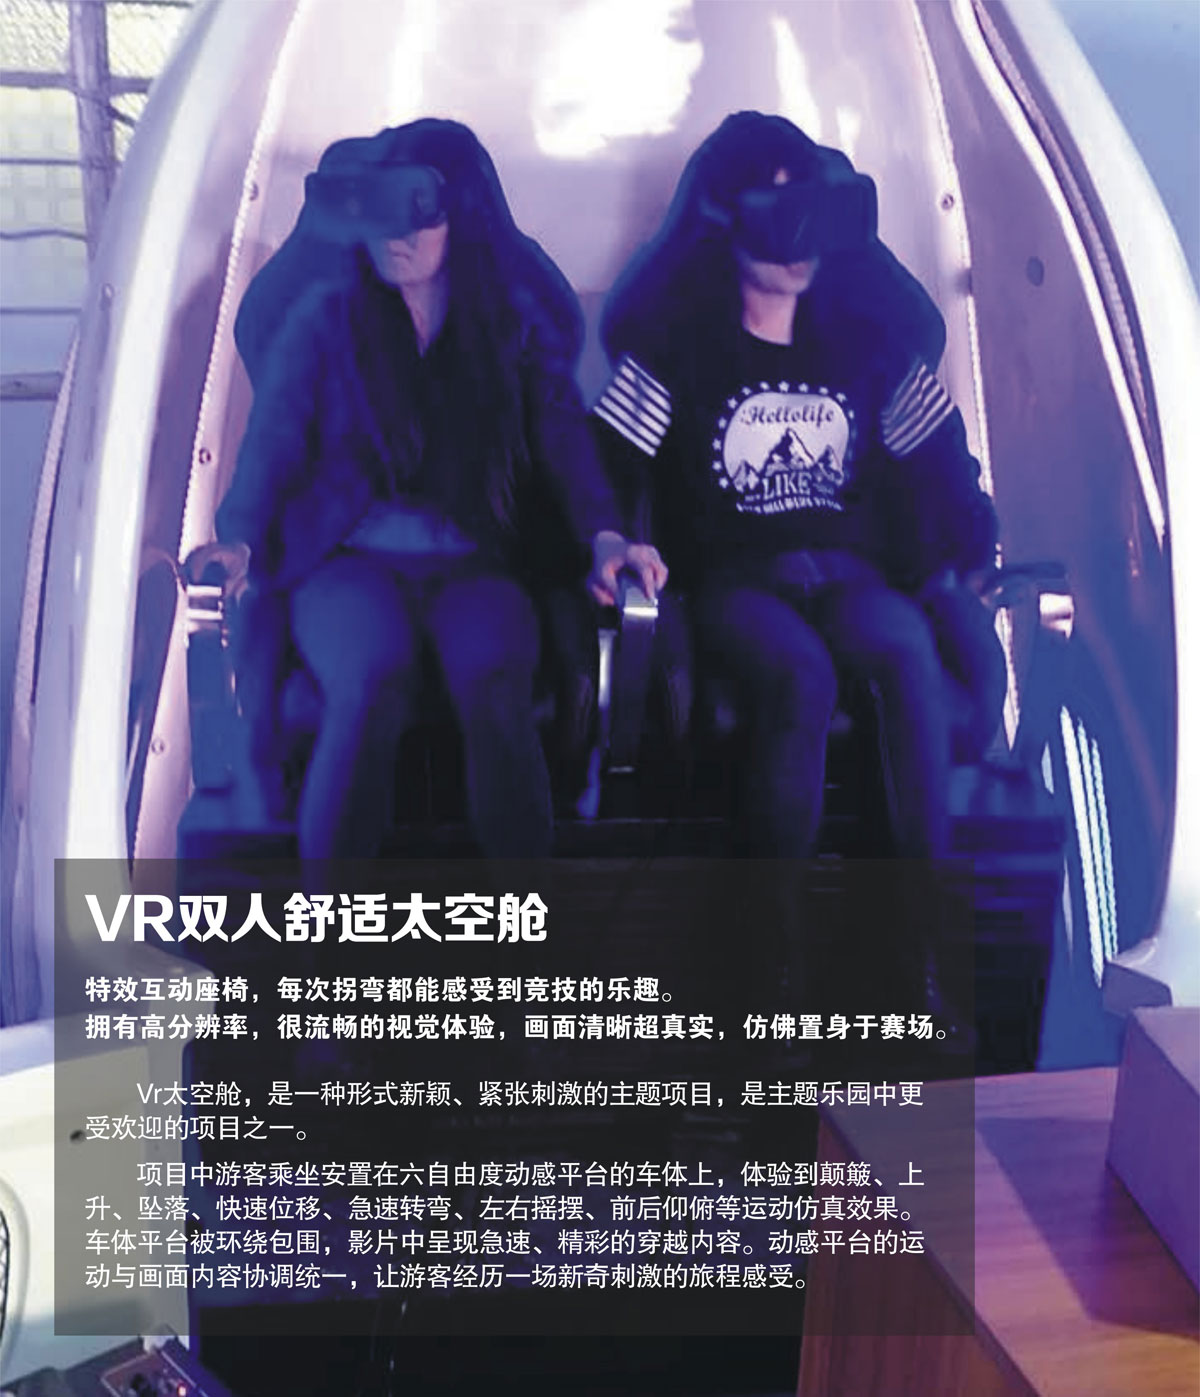 球幕影院VR双人舒适太空舱.jpg